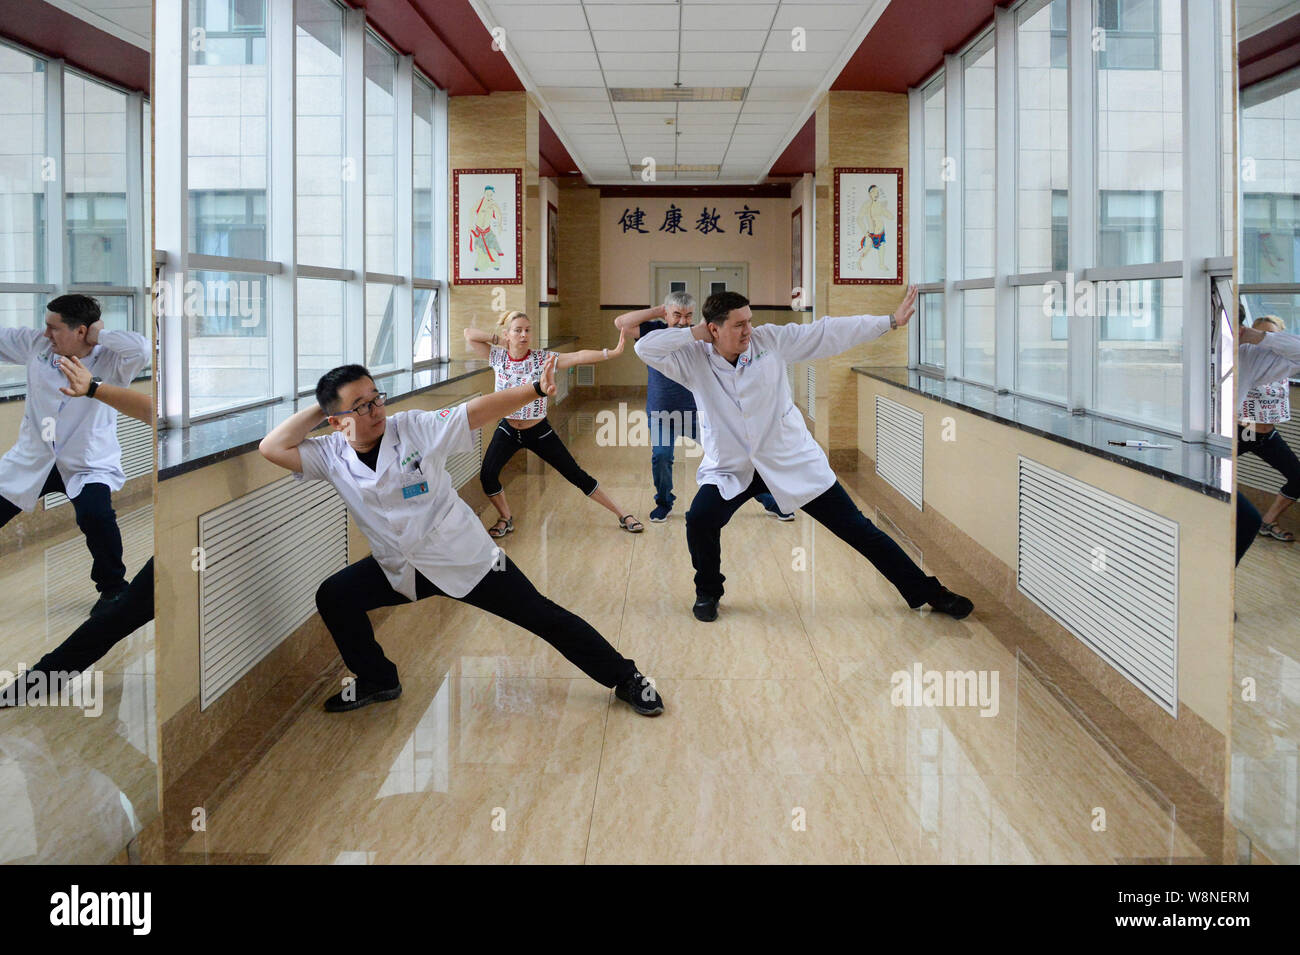 (190810) -- SHANGHAI, 10 août 2019 (Xinhua) -- Un Dong (1e R) et chef de l'examen physique Zha centre (1er Minghui L) Demandez aux patients russes de faire l'exercice de la médecine traditionnelle chinoise dans l'hôpital du peuple de Shanghai, la province du nord-est de la Chine, 10 août 2019. Un Dong, 40 ans, est un traducteur russe travaillant dans le centre d'examen physique de l'hôpital du peuple de Shanghai. Il est chargé de recevoir les patients russes, en les aidant à communiquer avec les médecins chinois, la traduction de leurs rapports d'examen médical chinois en version russe et en fournissant Banque D'Images